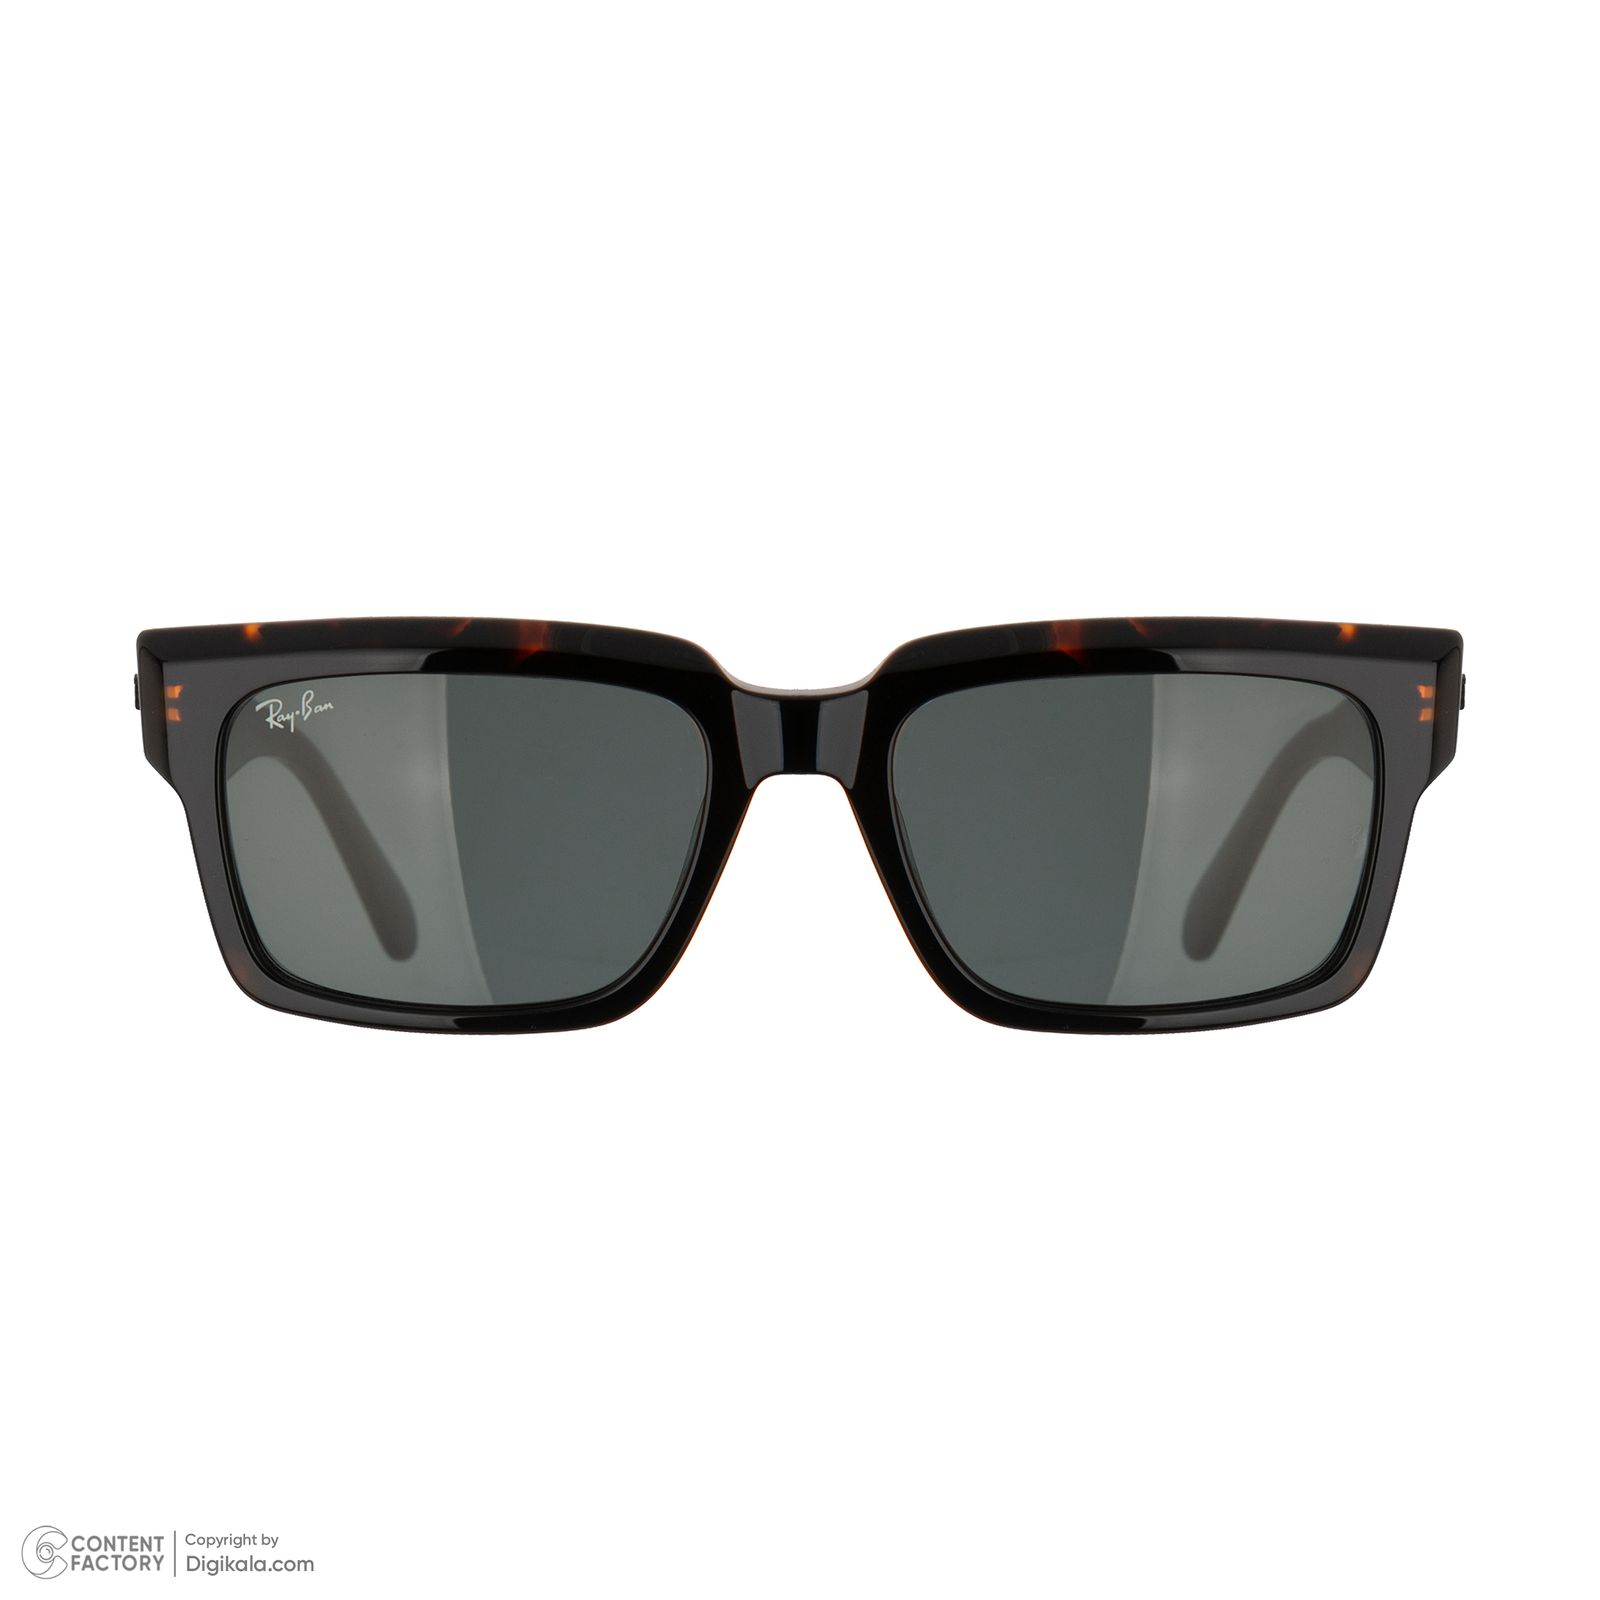 عینک آفتابی ری بن مدل 2191-1292/B1 -  - 3